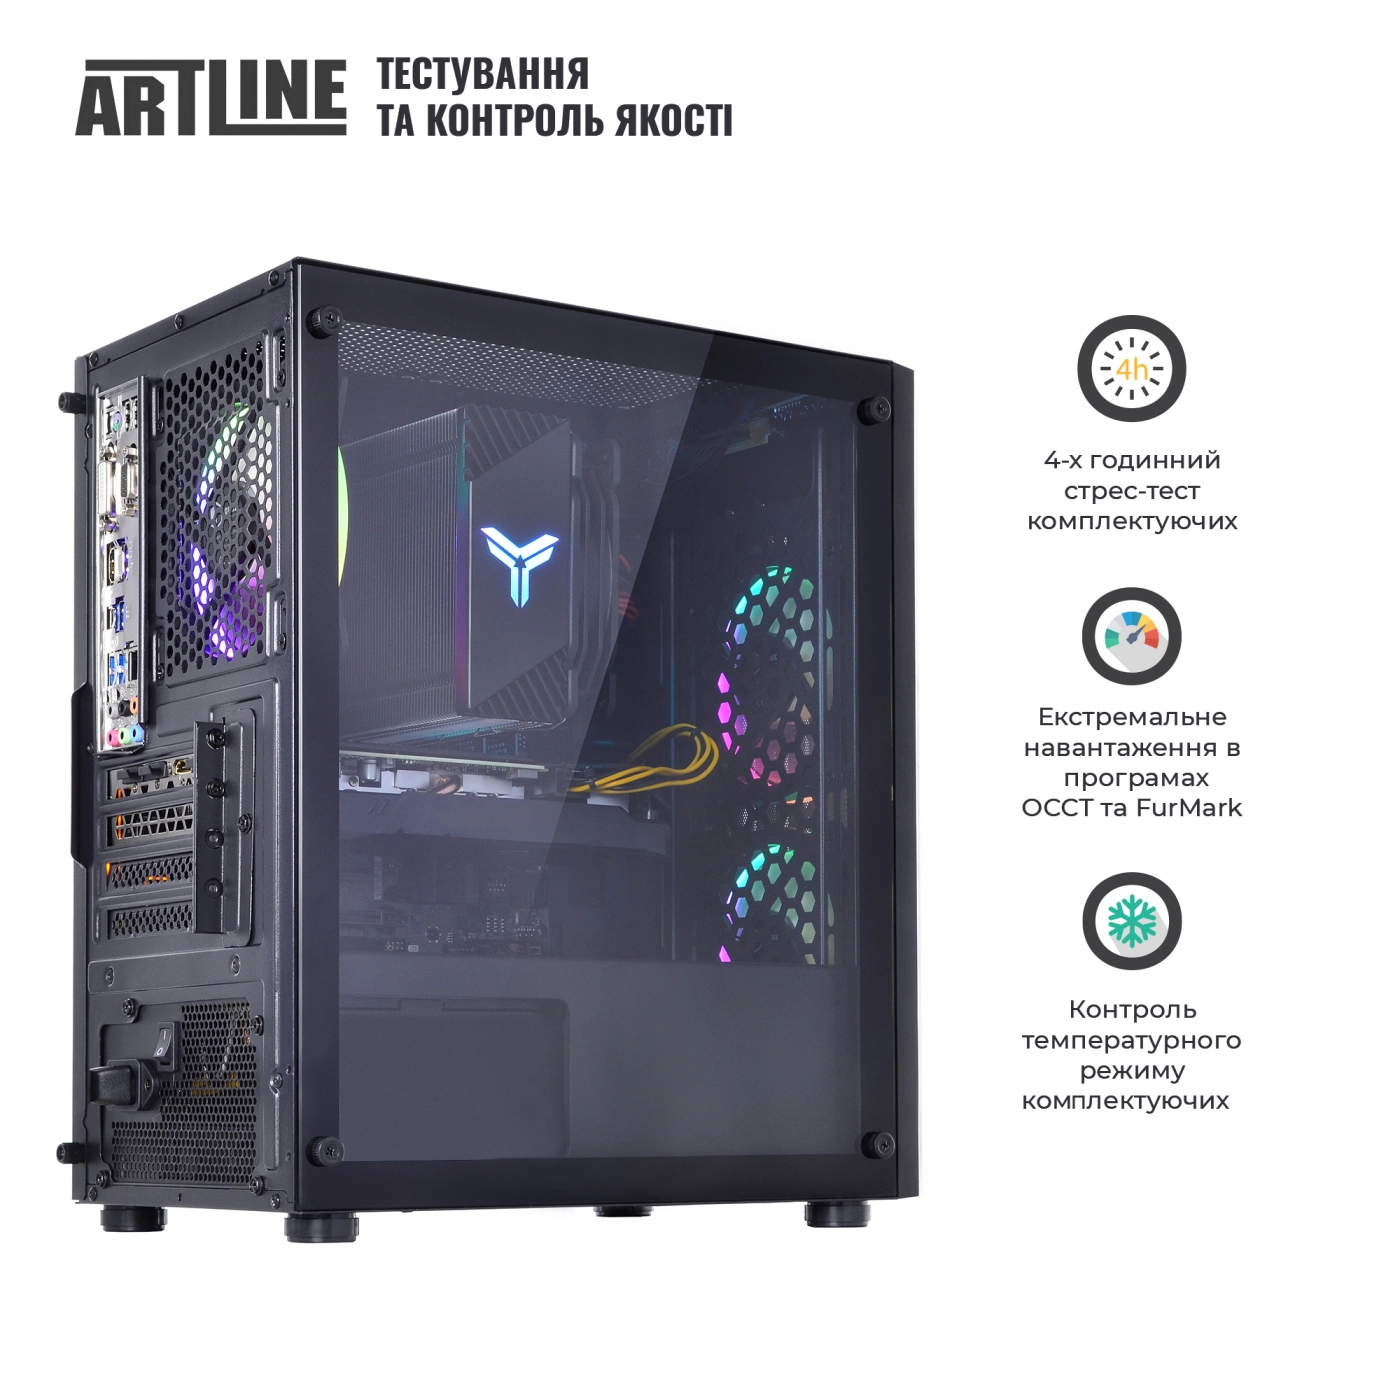 Купить Компьютер ARTLINE Gaming X71v29 - фото 9